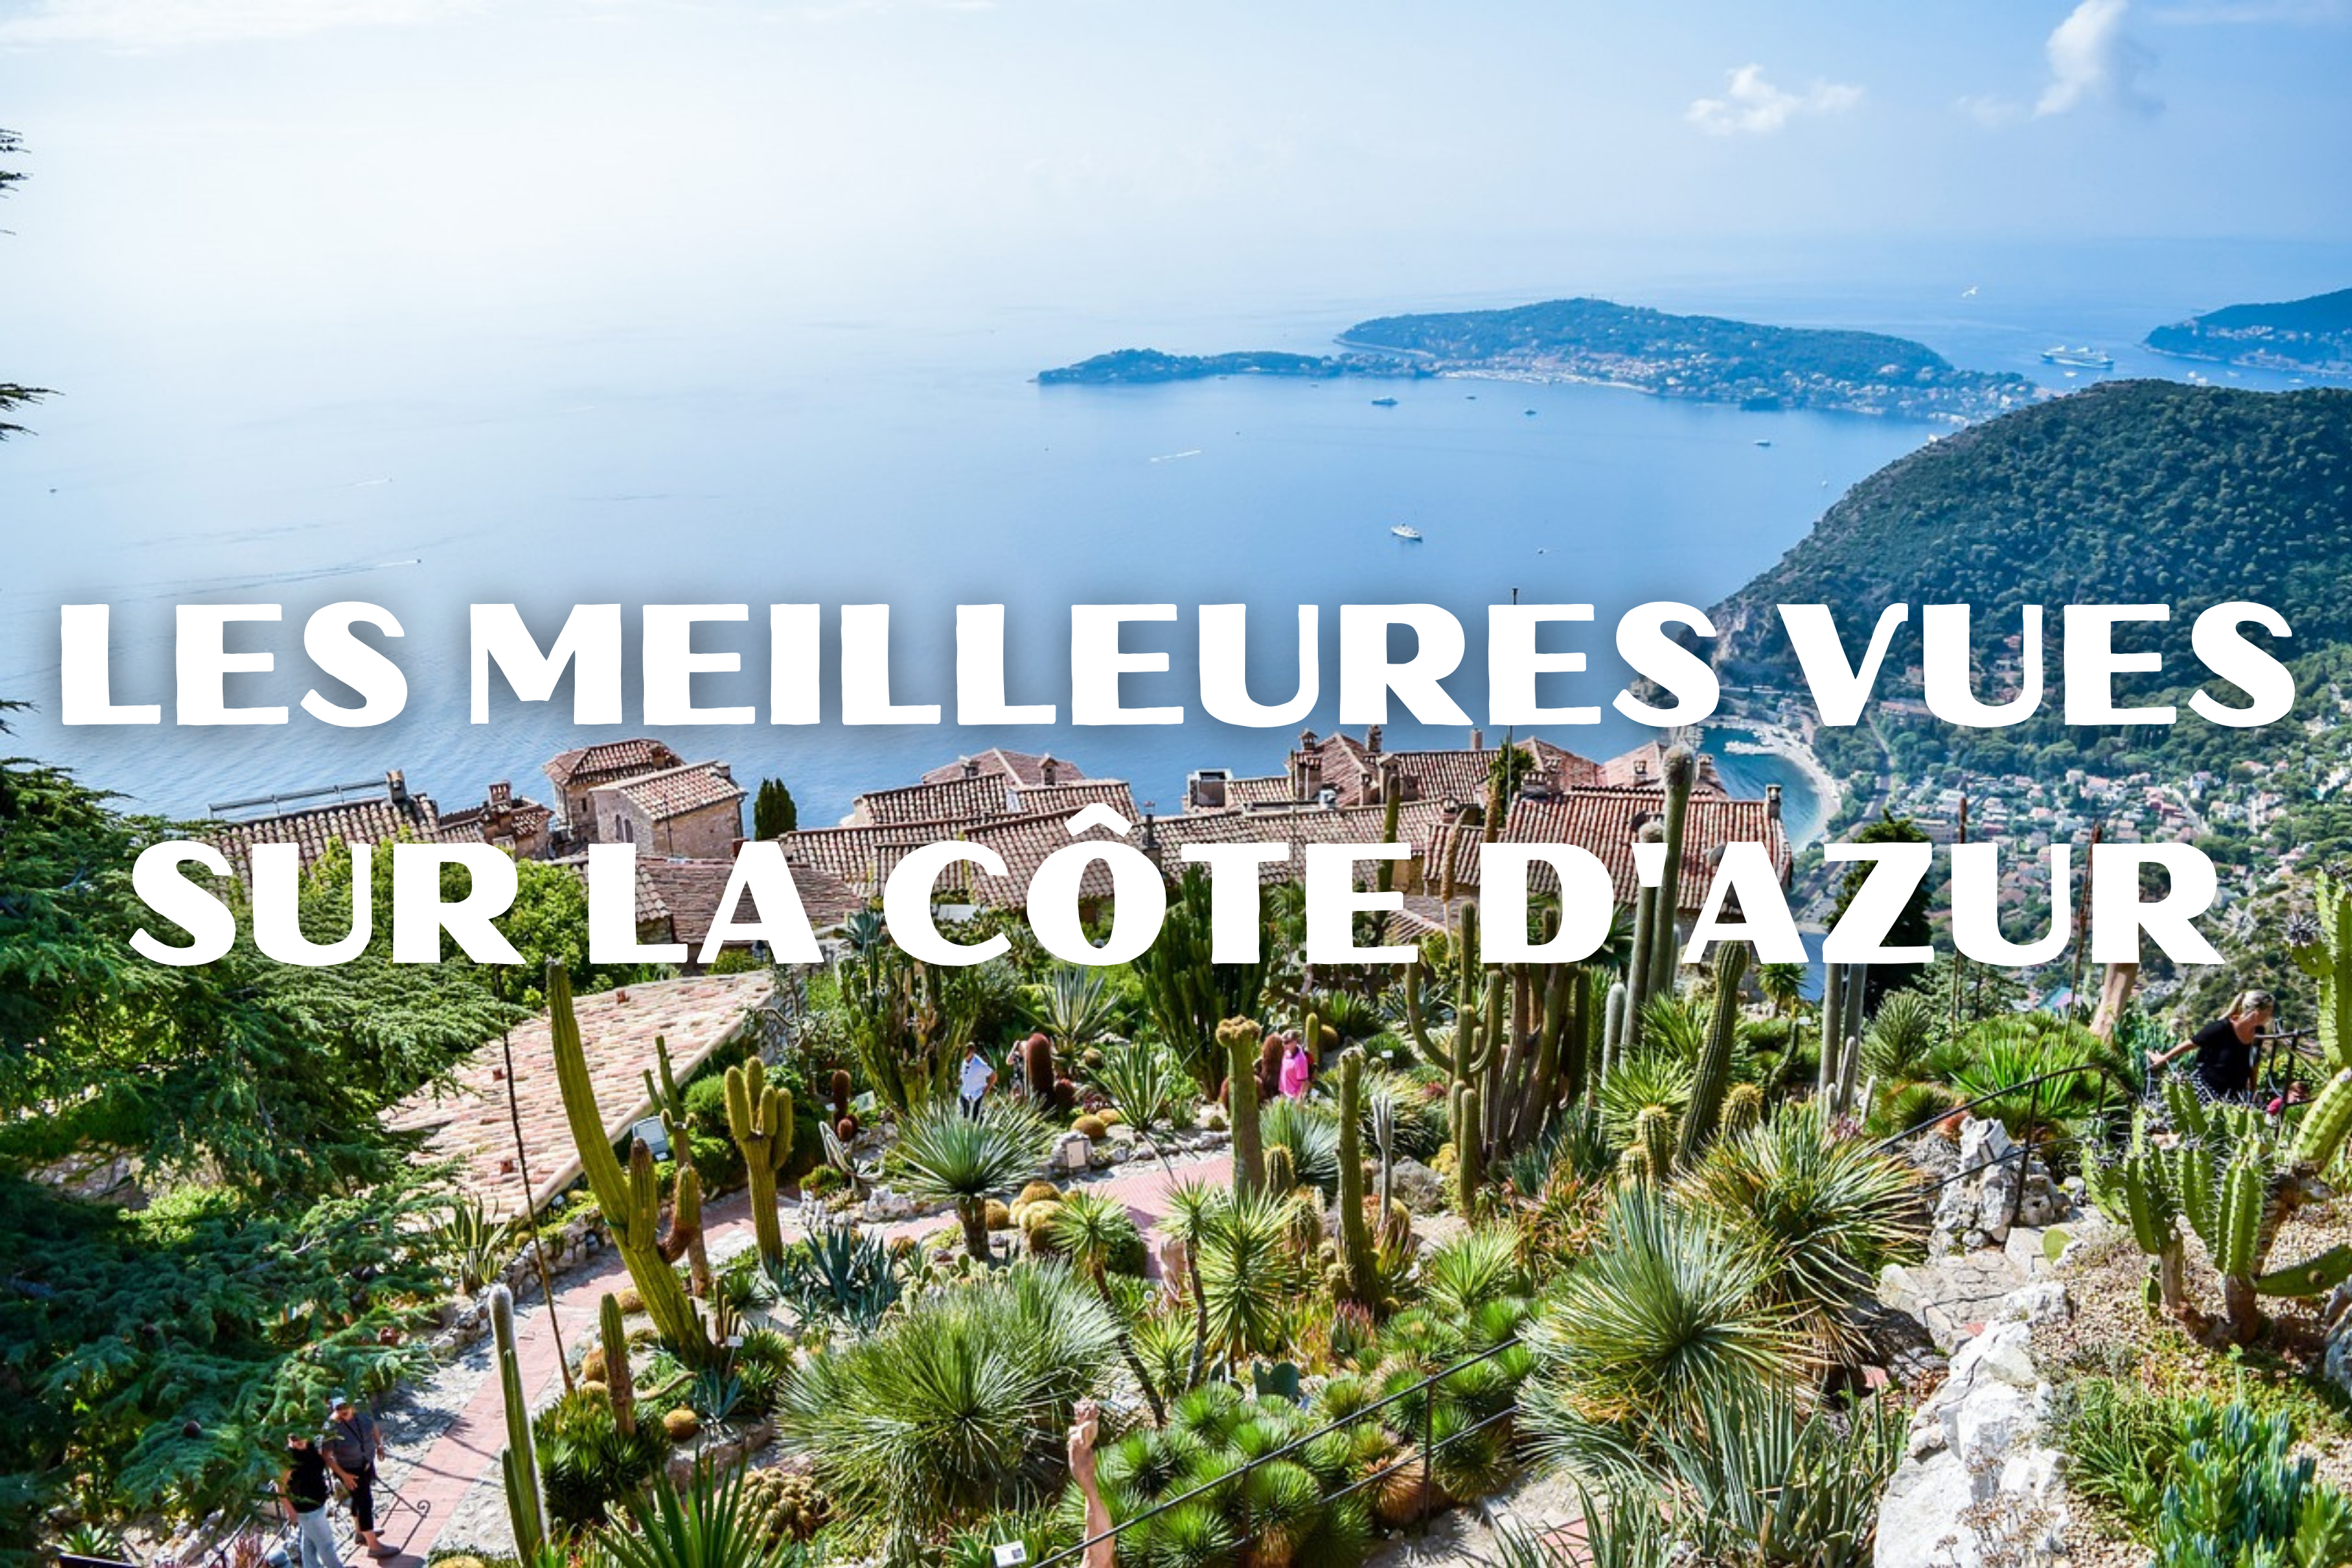 Les meilleures vues pour admirer la Côte d'Azur